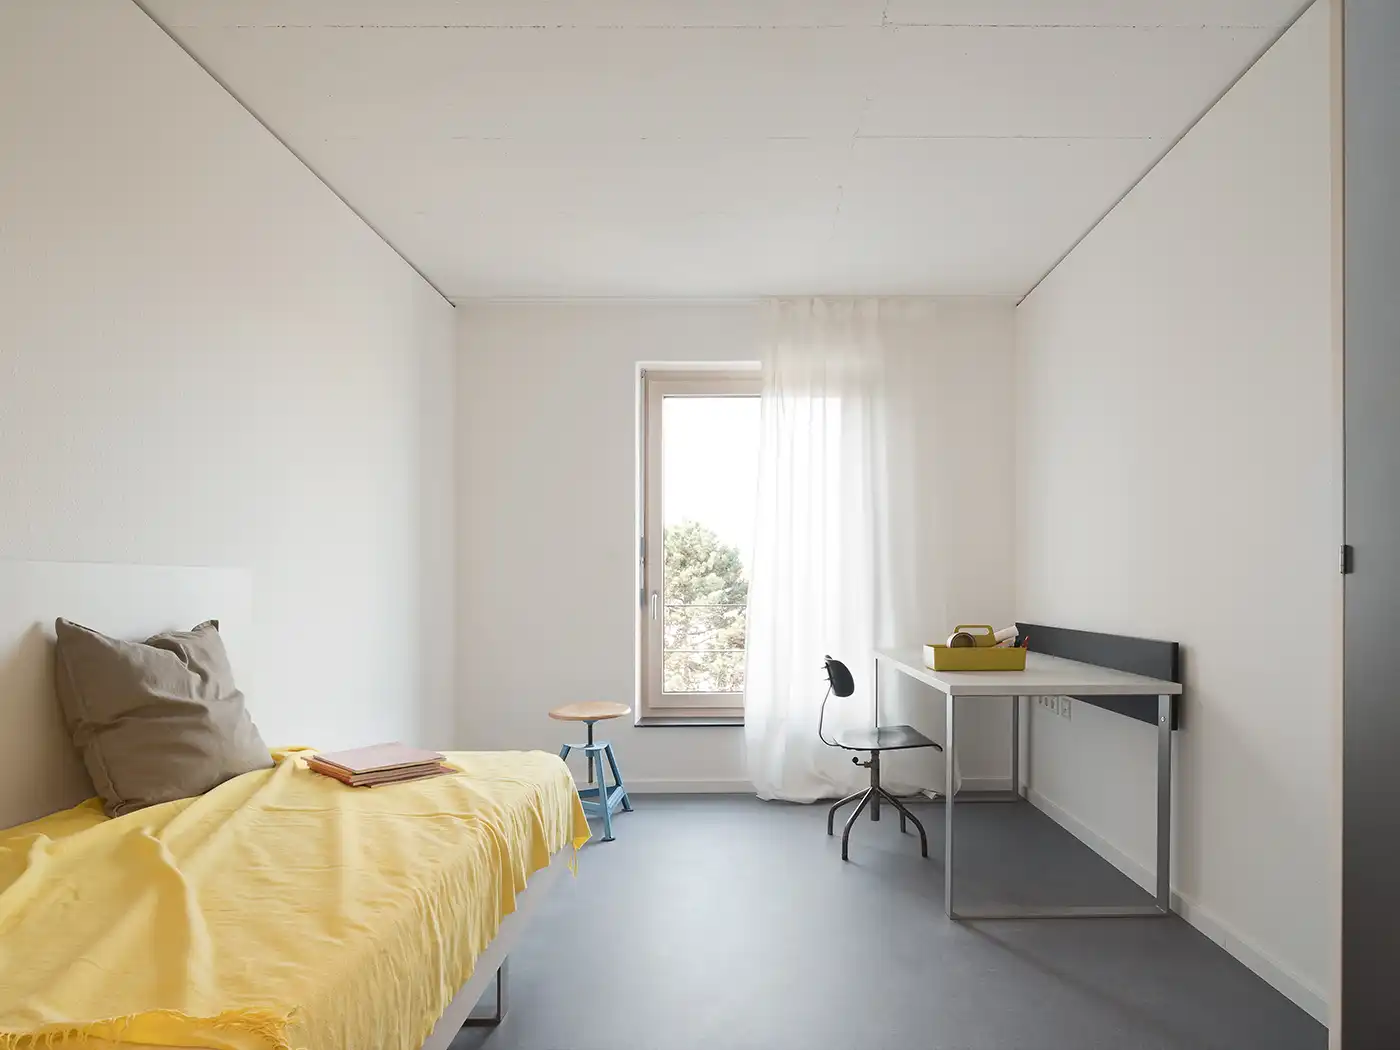 Zimmer im Studierendenwohnheim in Ludwigsburg mit gelber Bettwäsche